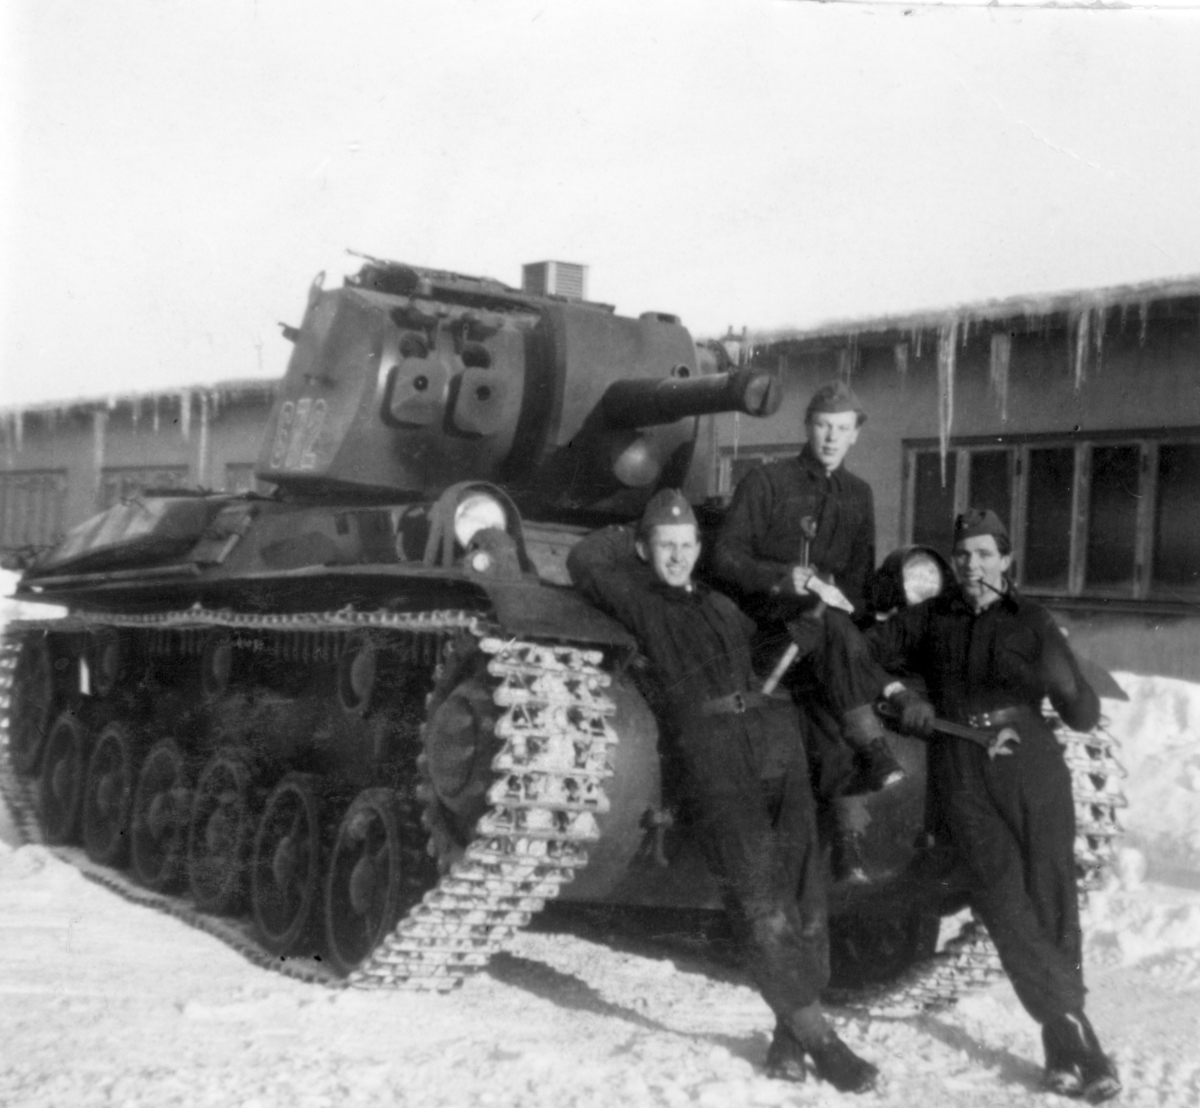 Tre korpralskoleelever framför en stridsvagn på P 4 garageplan.

Milregnr: 672